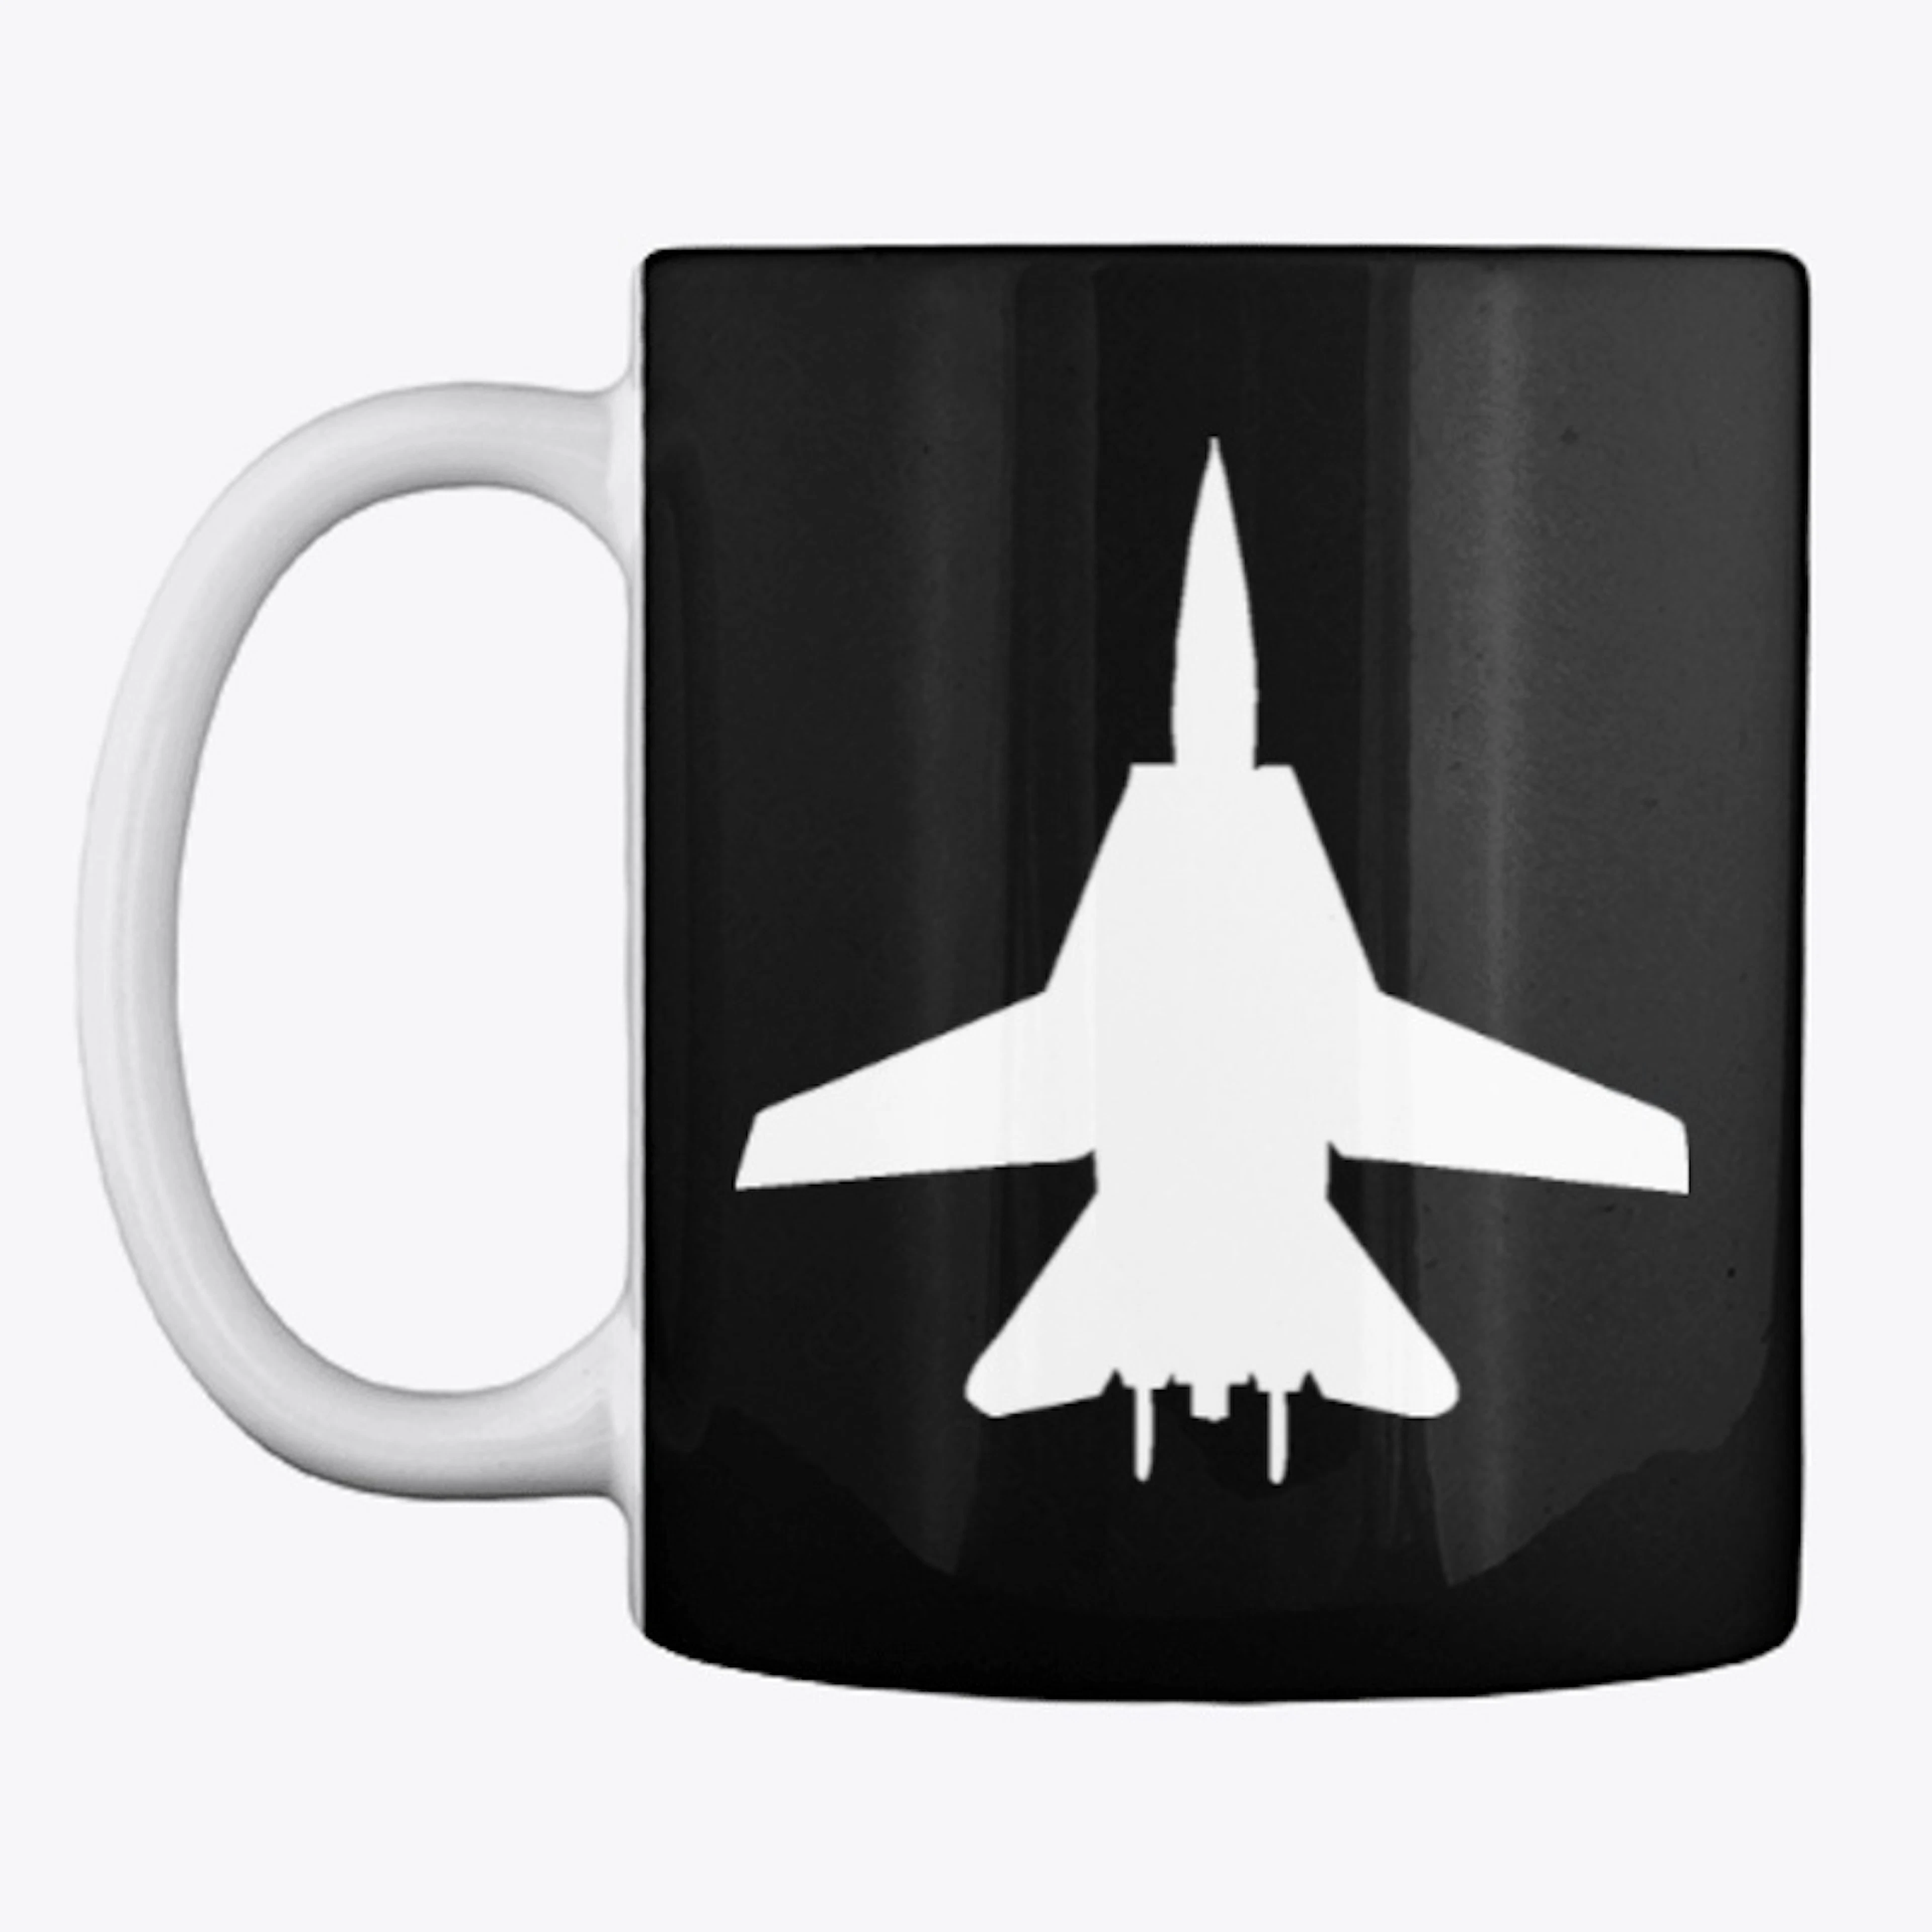 F14 black mug